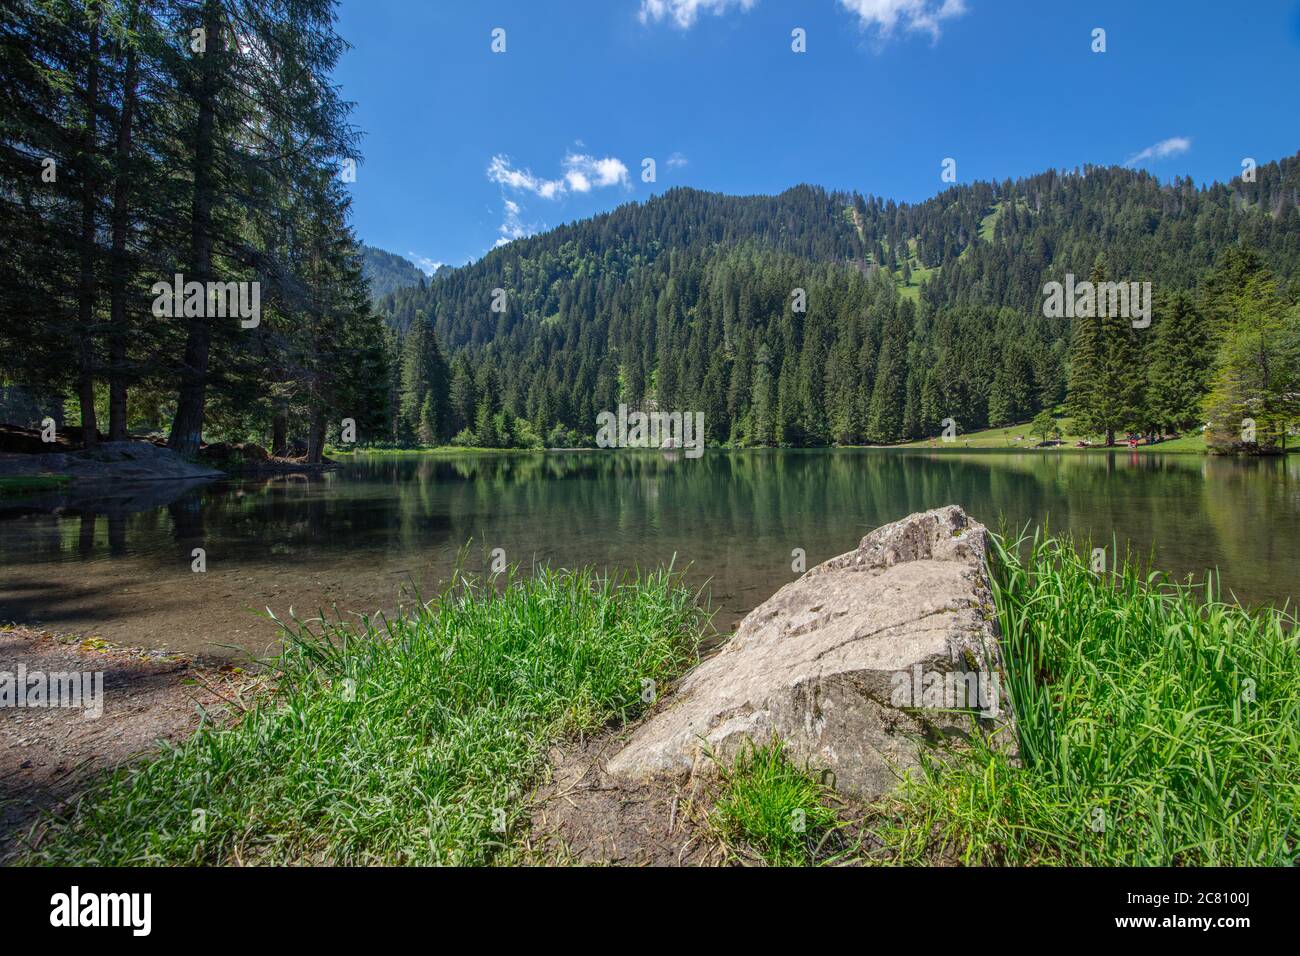 Una hermosa imagen de gran angular del lago 'Lago dei Caprioli' durante el verano, Trentino, Italia Foto de stock